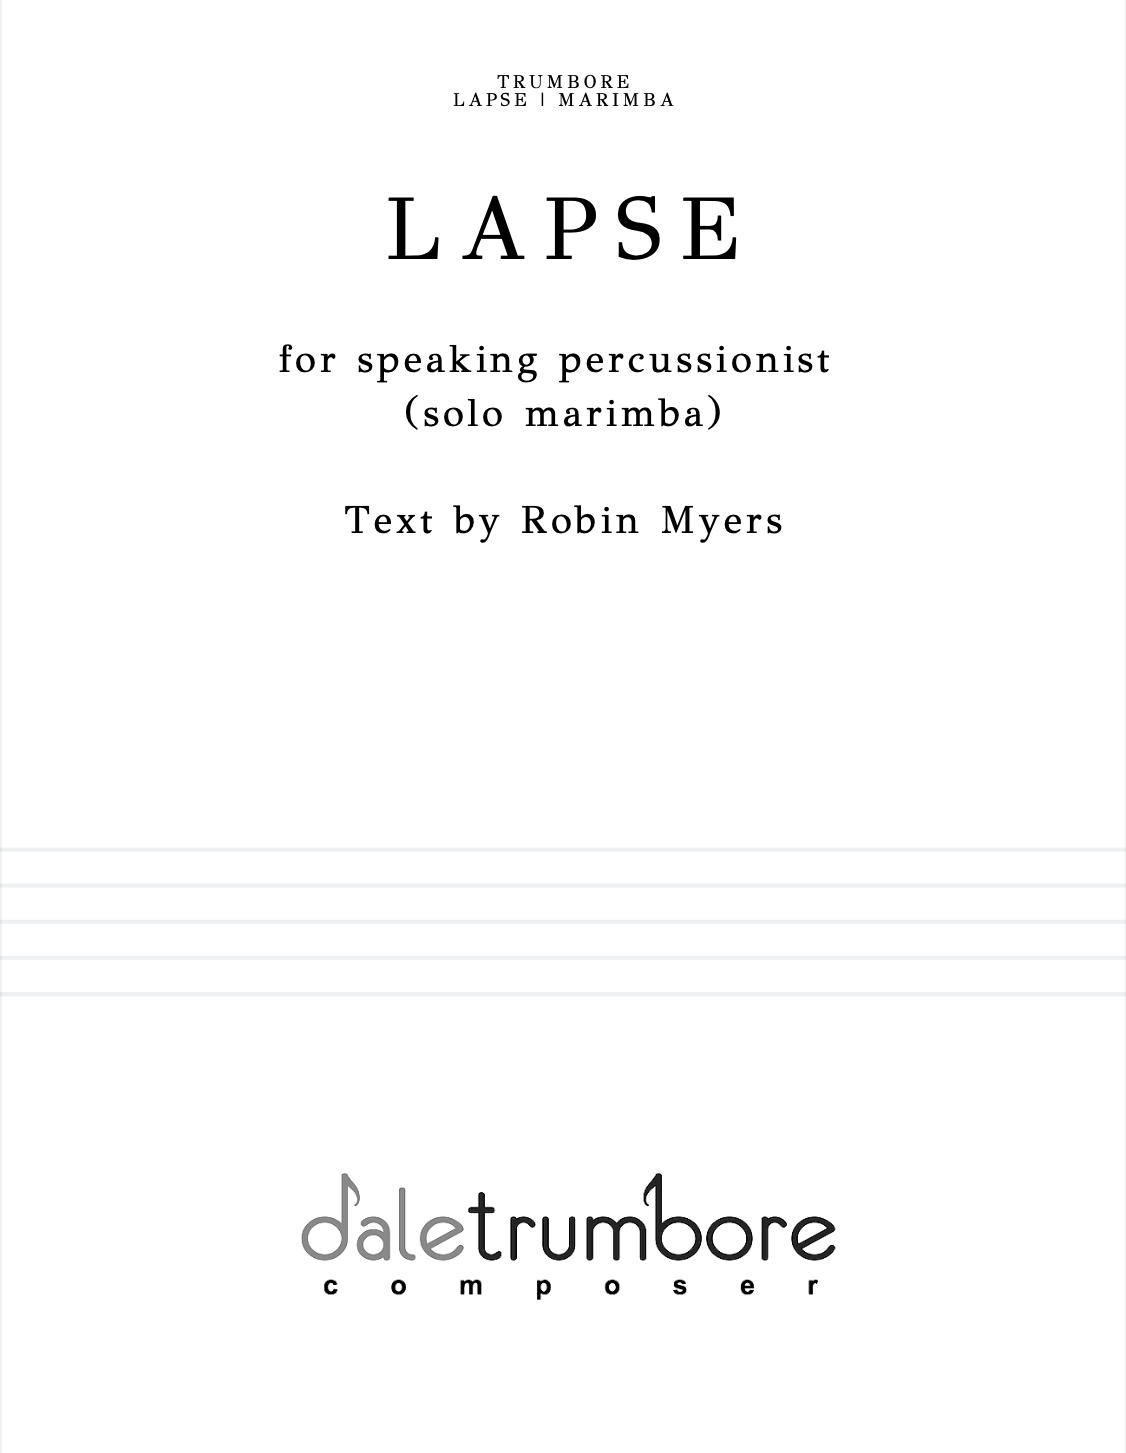 Lapse by Dale Trumbore